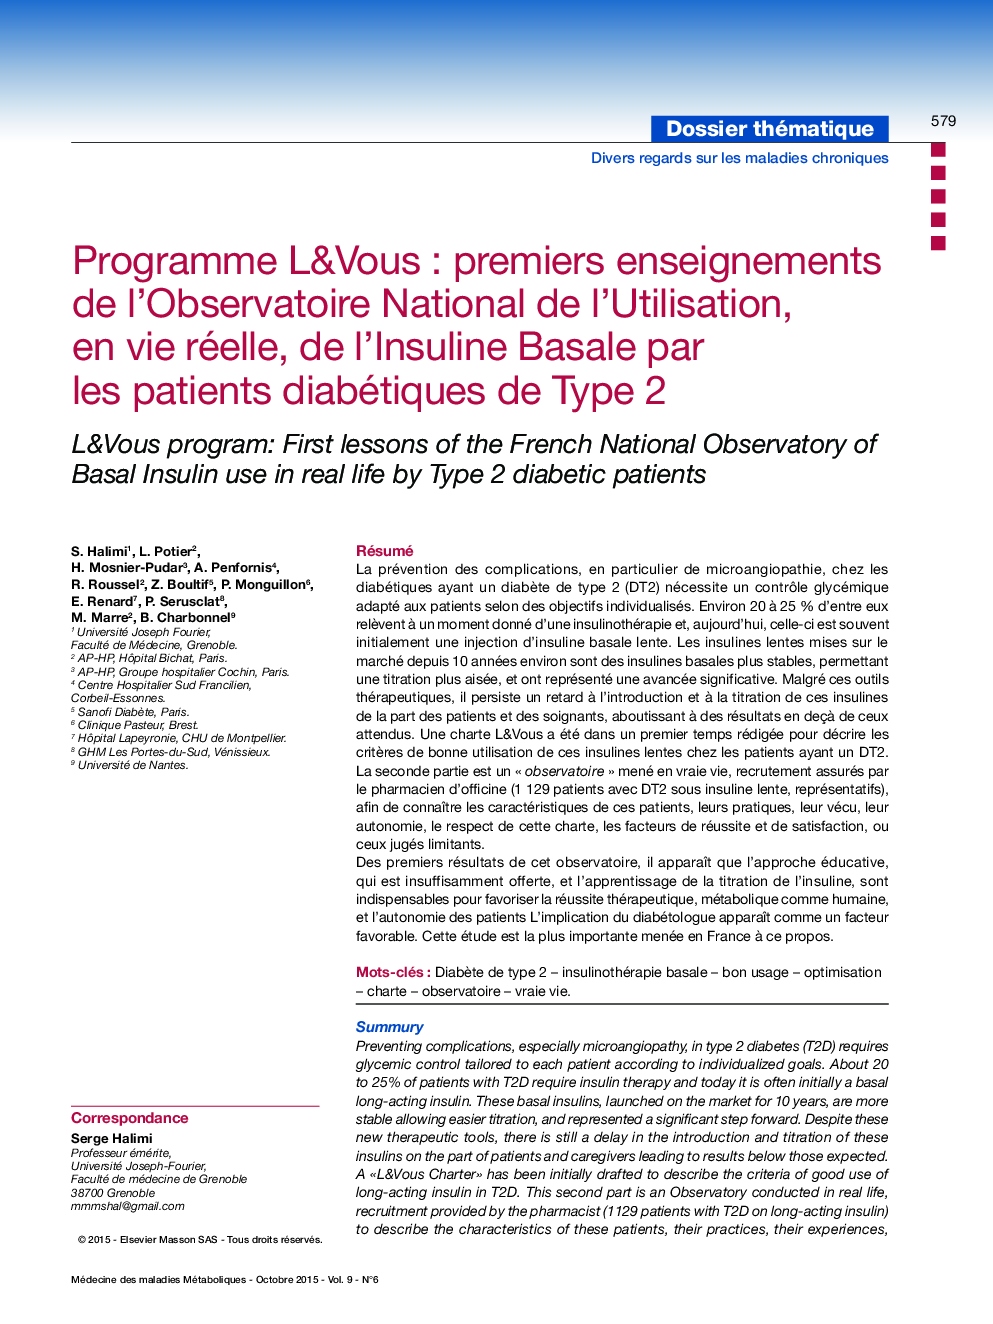 Programme L&Vous : premiers enseignements de l'Observatoire National de l'Utilisation, en vie réelle, de l'Insuline Basale par les patients diabétiques de Type 2